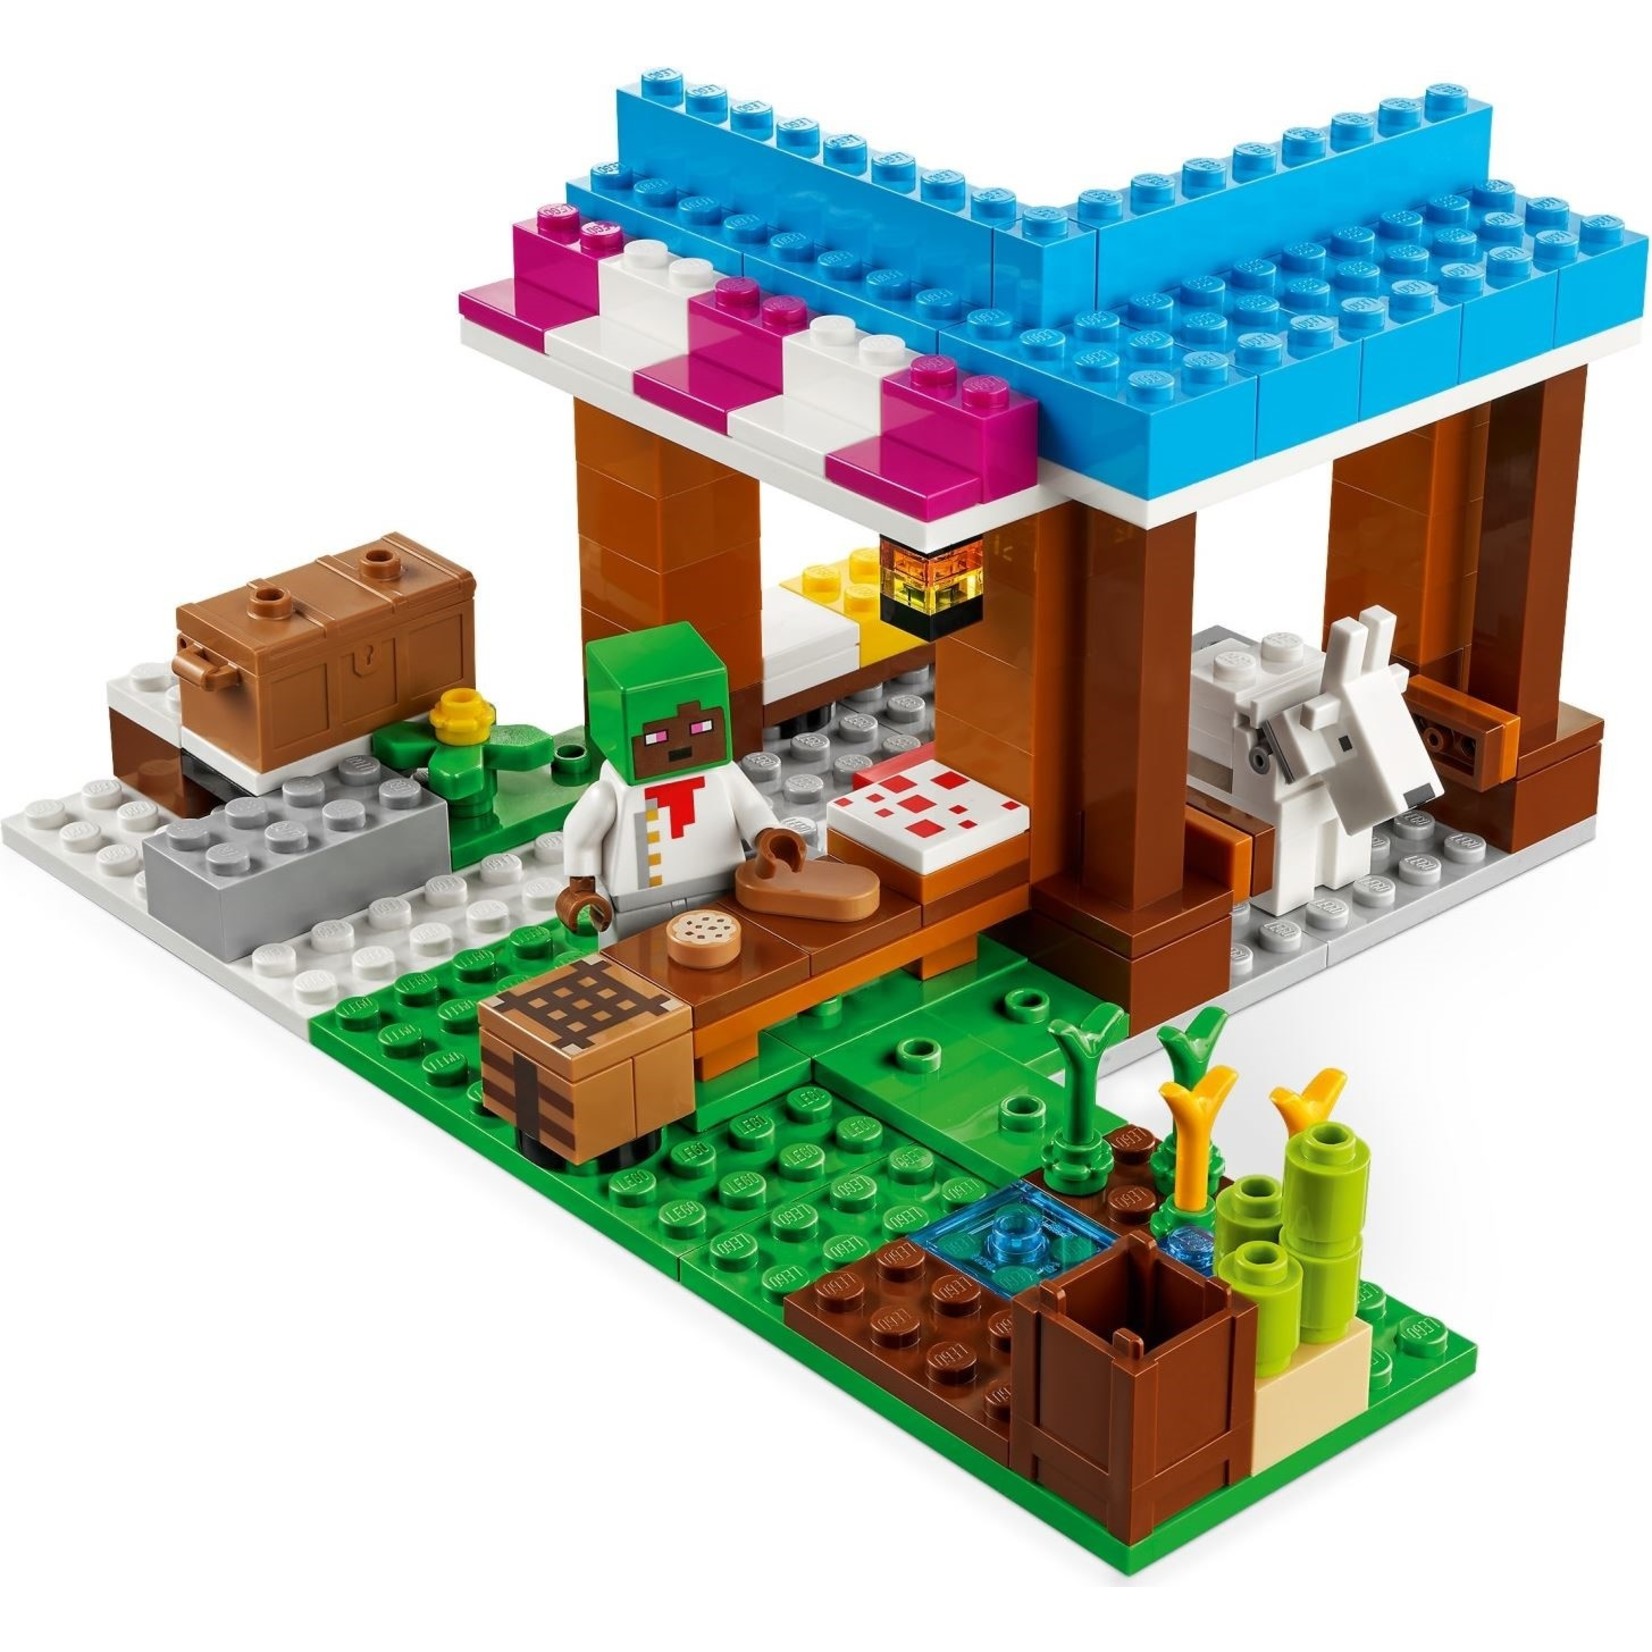 LEGO De bakkerij - 21184